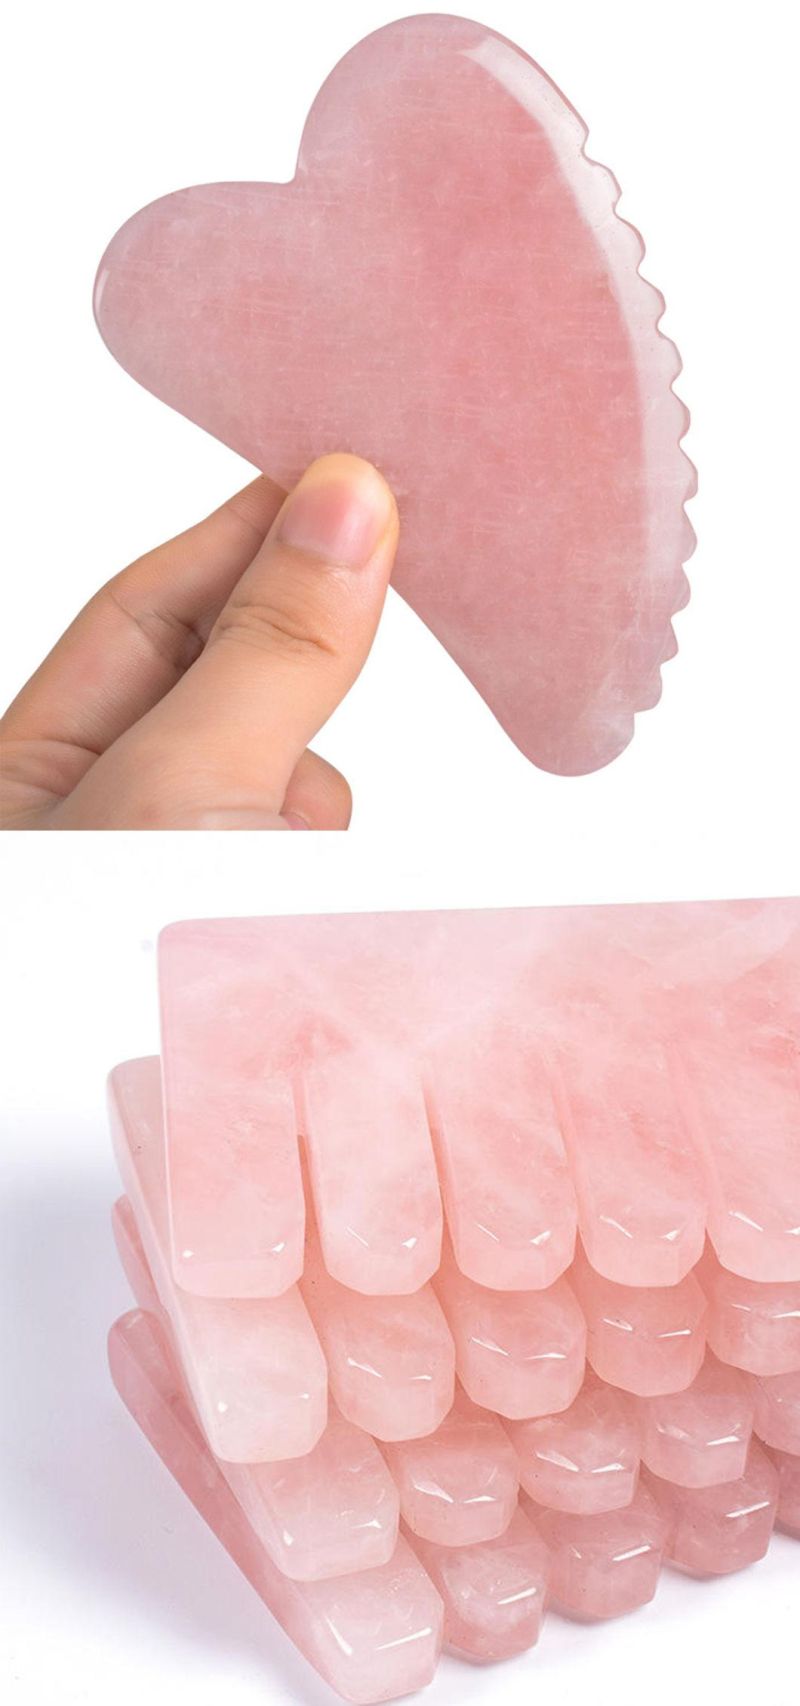 Anti-Aging Pink Rose Quartz Skin Massager Comb Gua Sha Jade